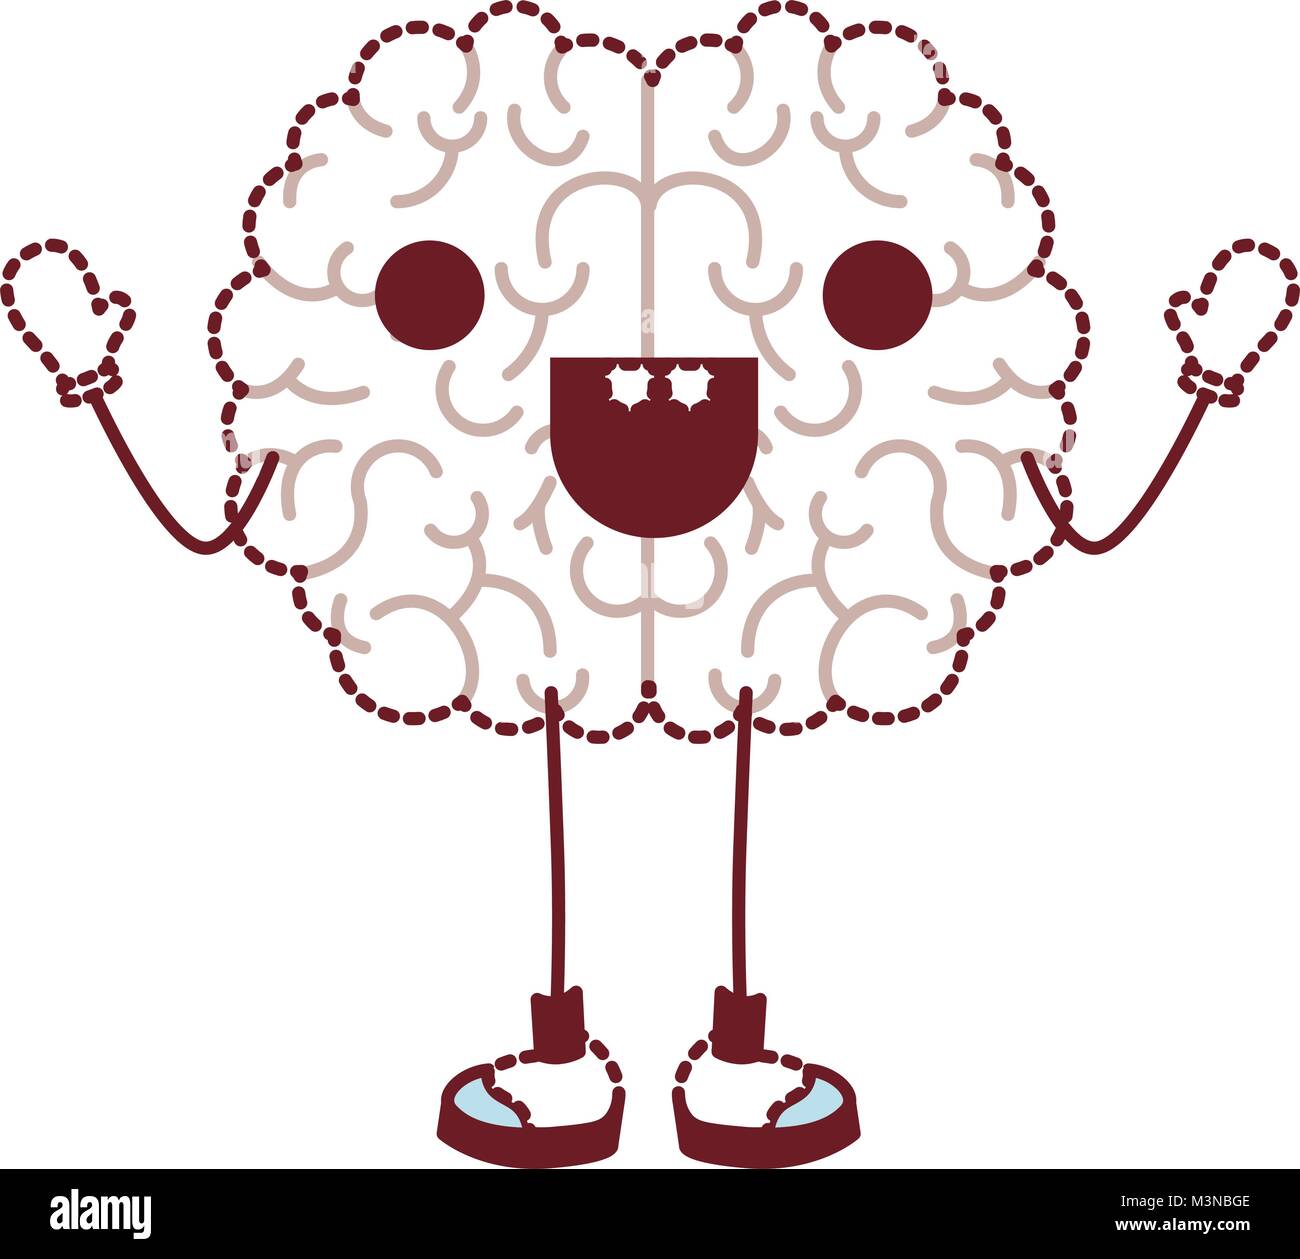 Cerveau bande dessinée personnage kawaii Illustration de Vecteur